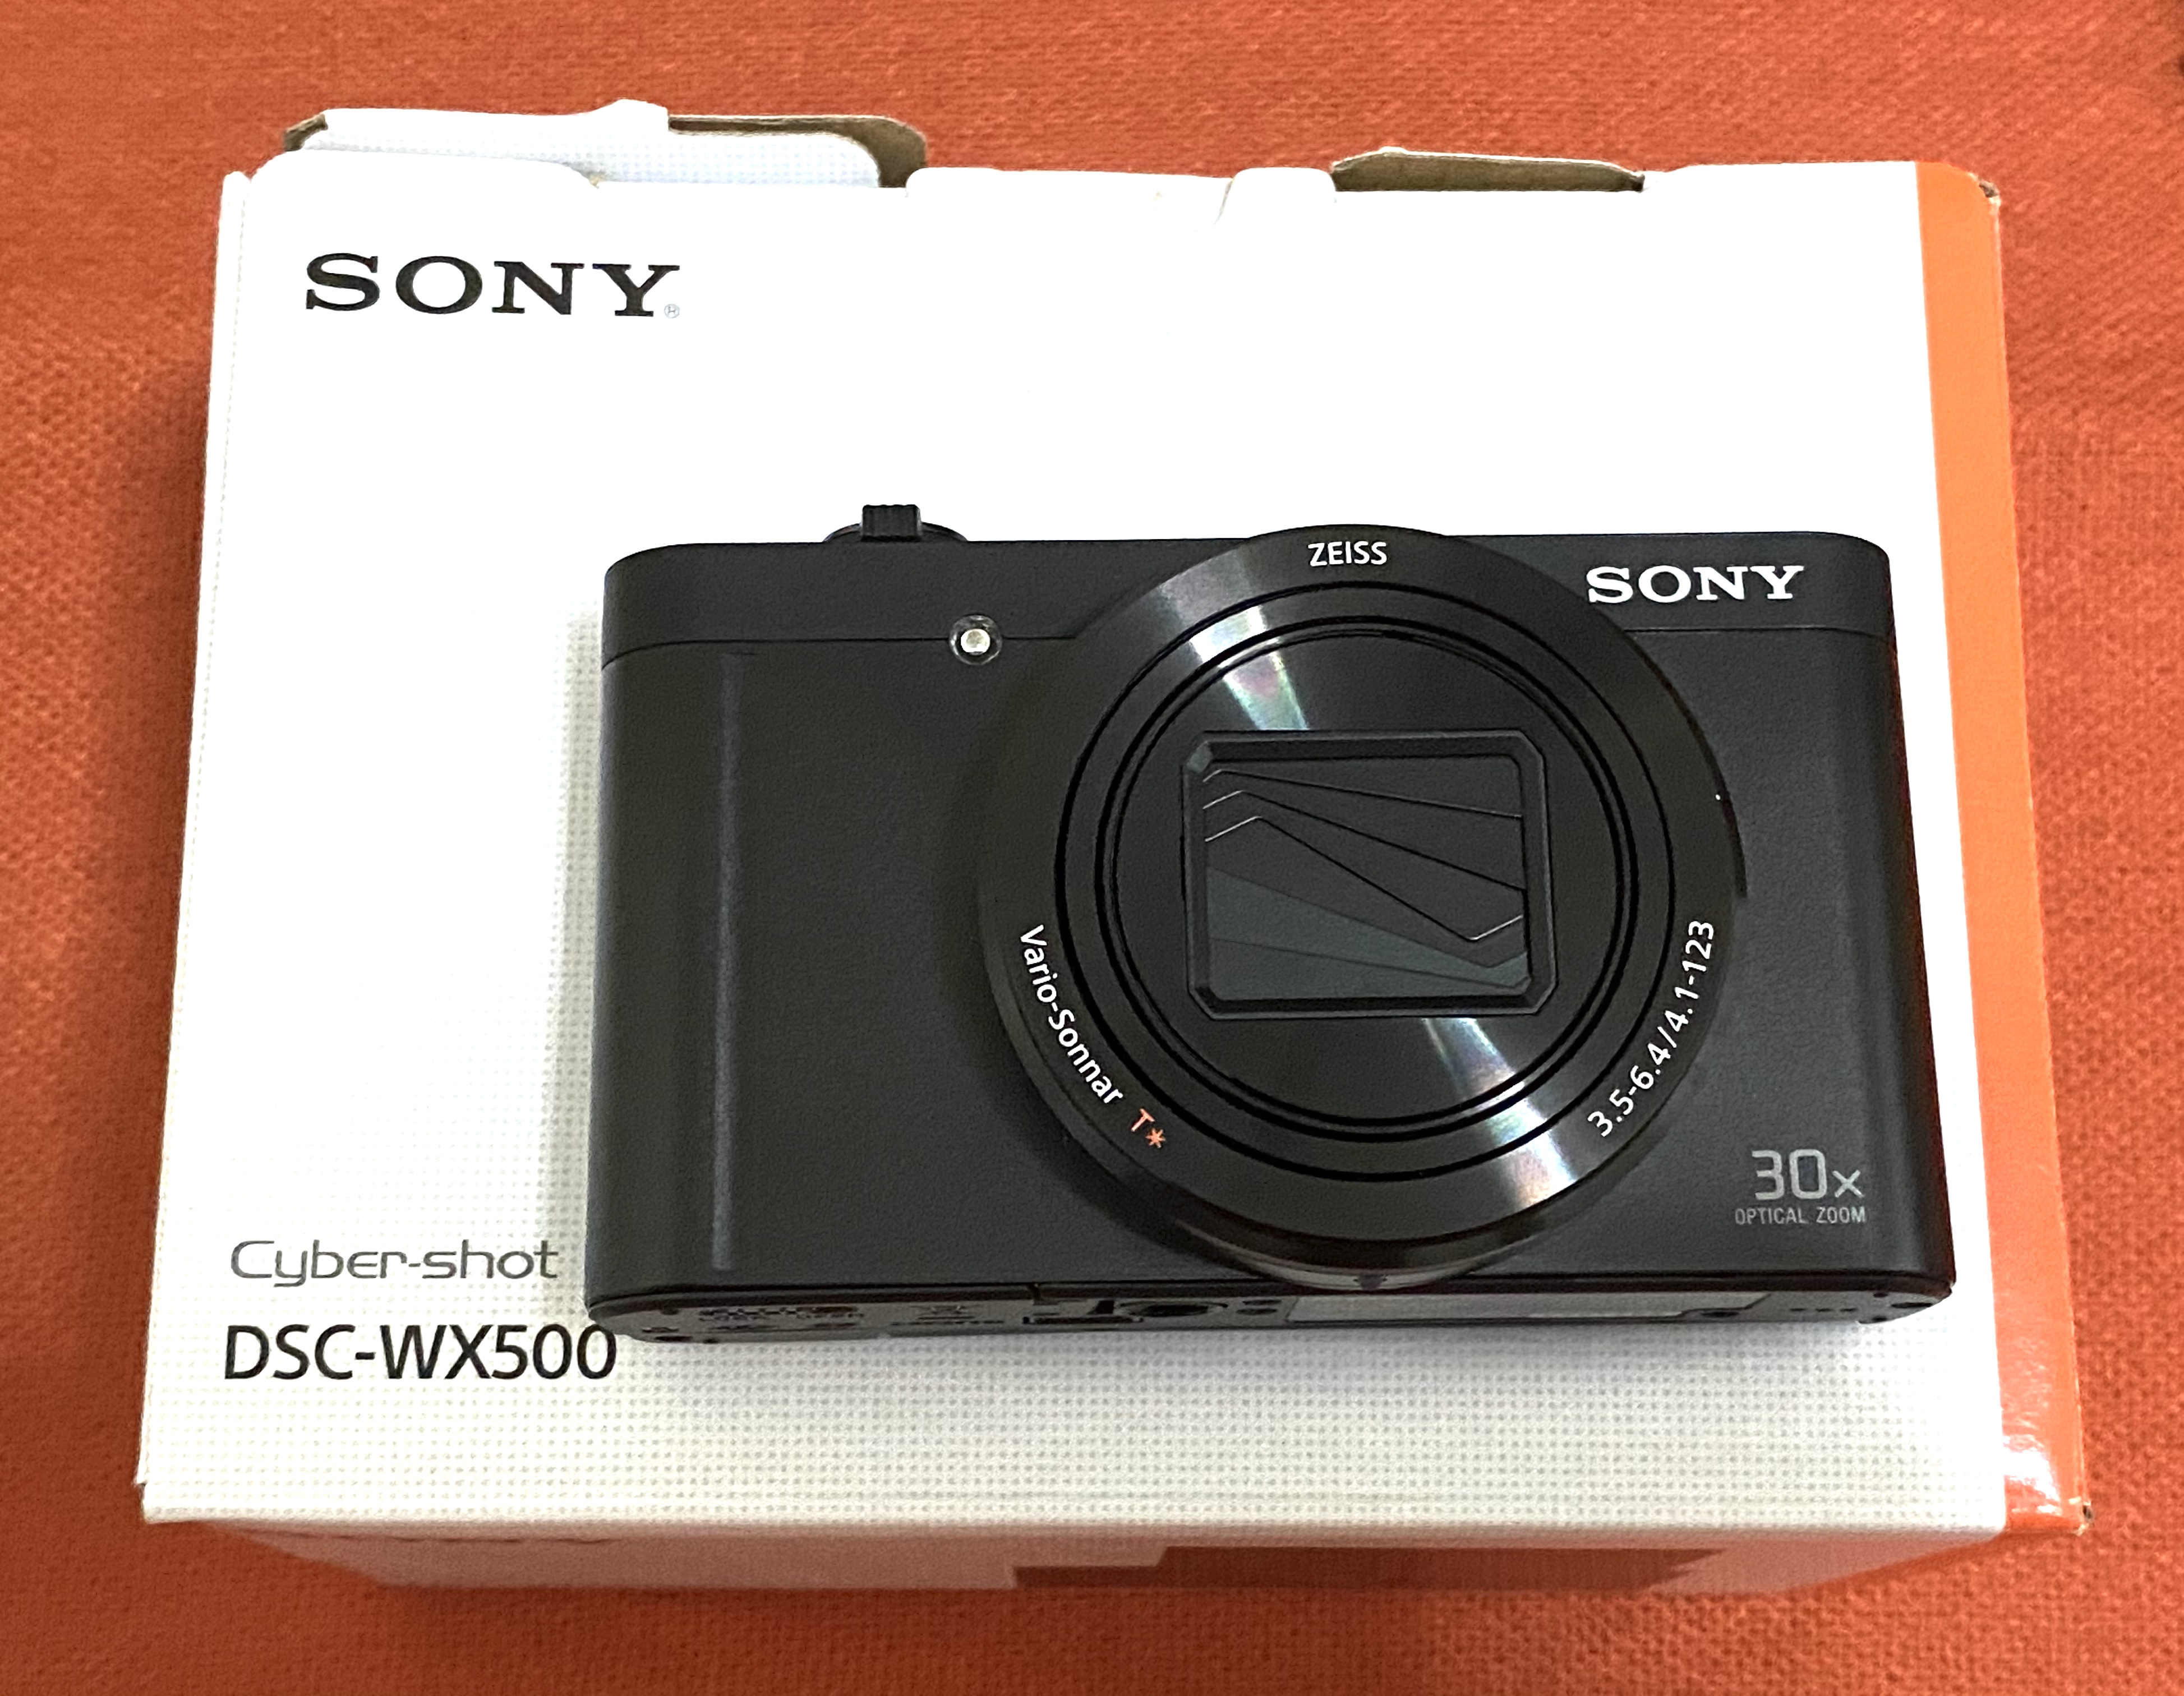 2nd hand Sony-Cybershot DSC-WX500 on sale